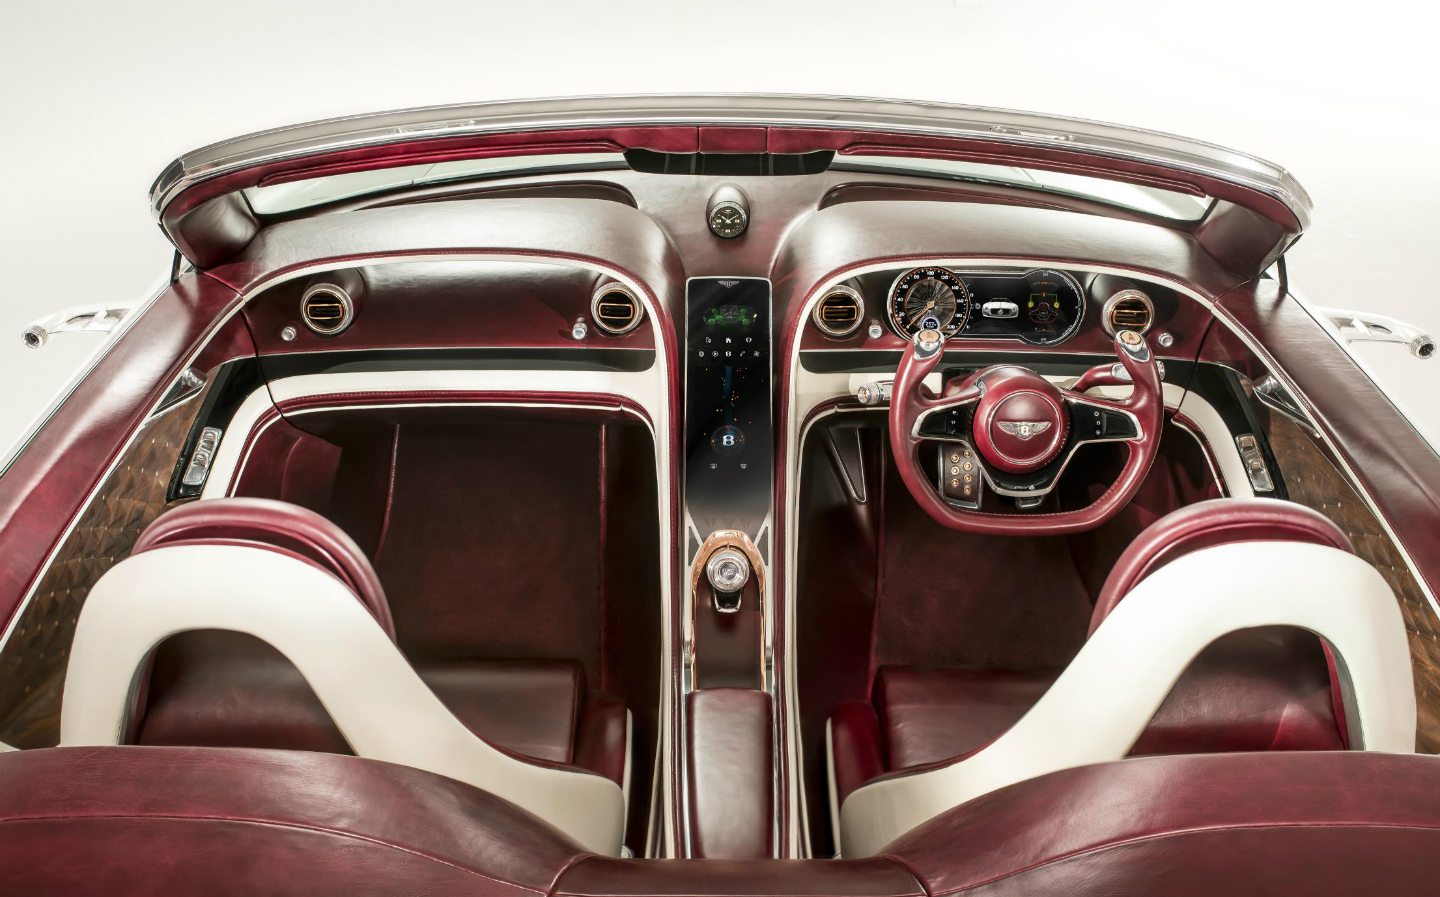 Bentley EXP 12 Speed 6e interior